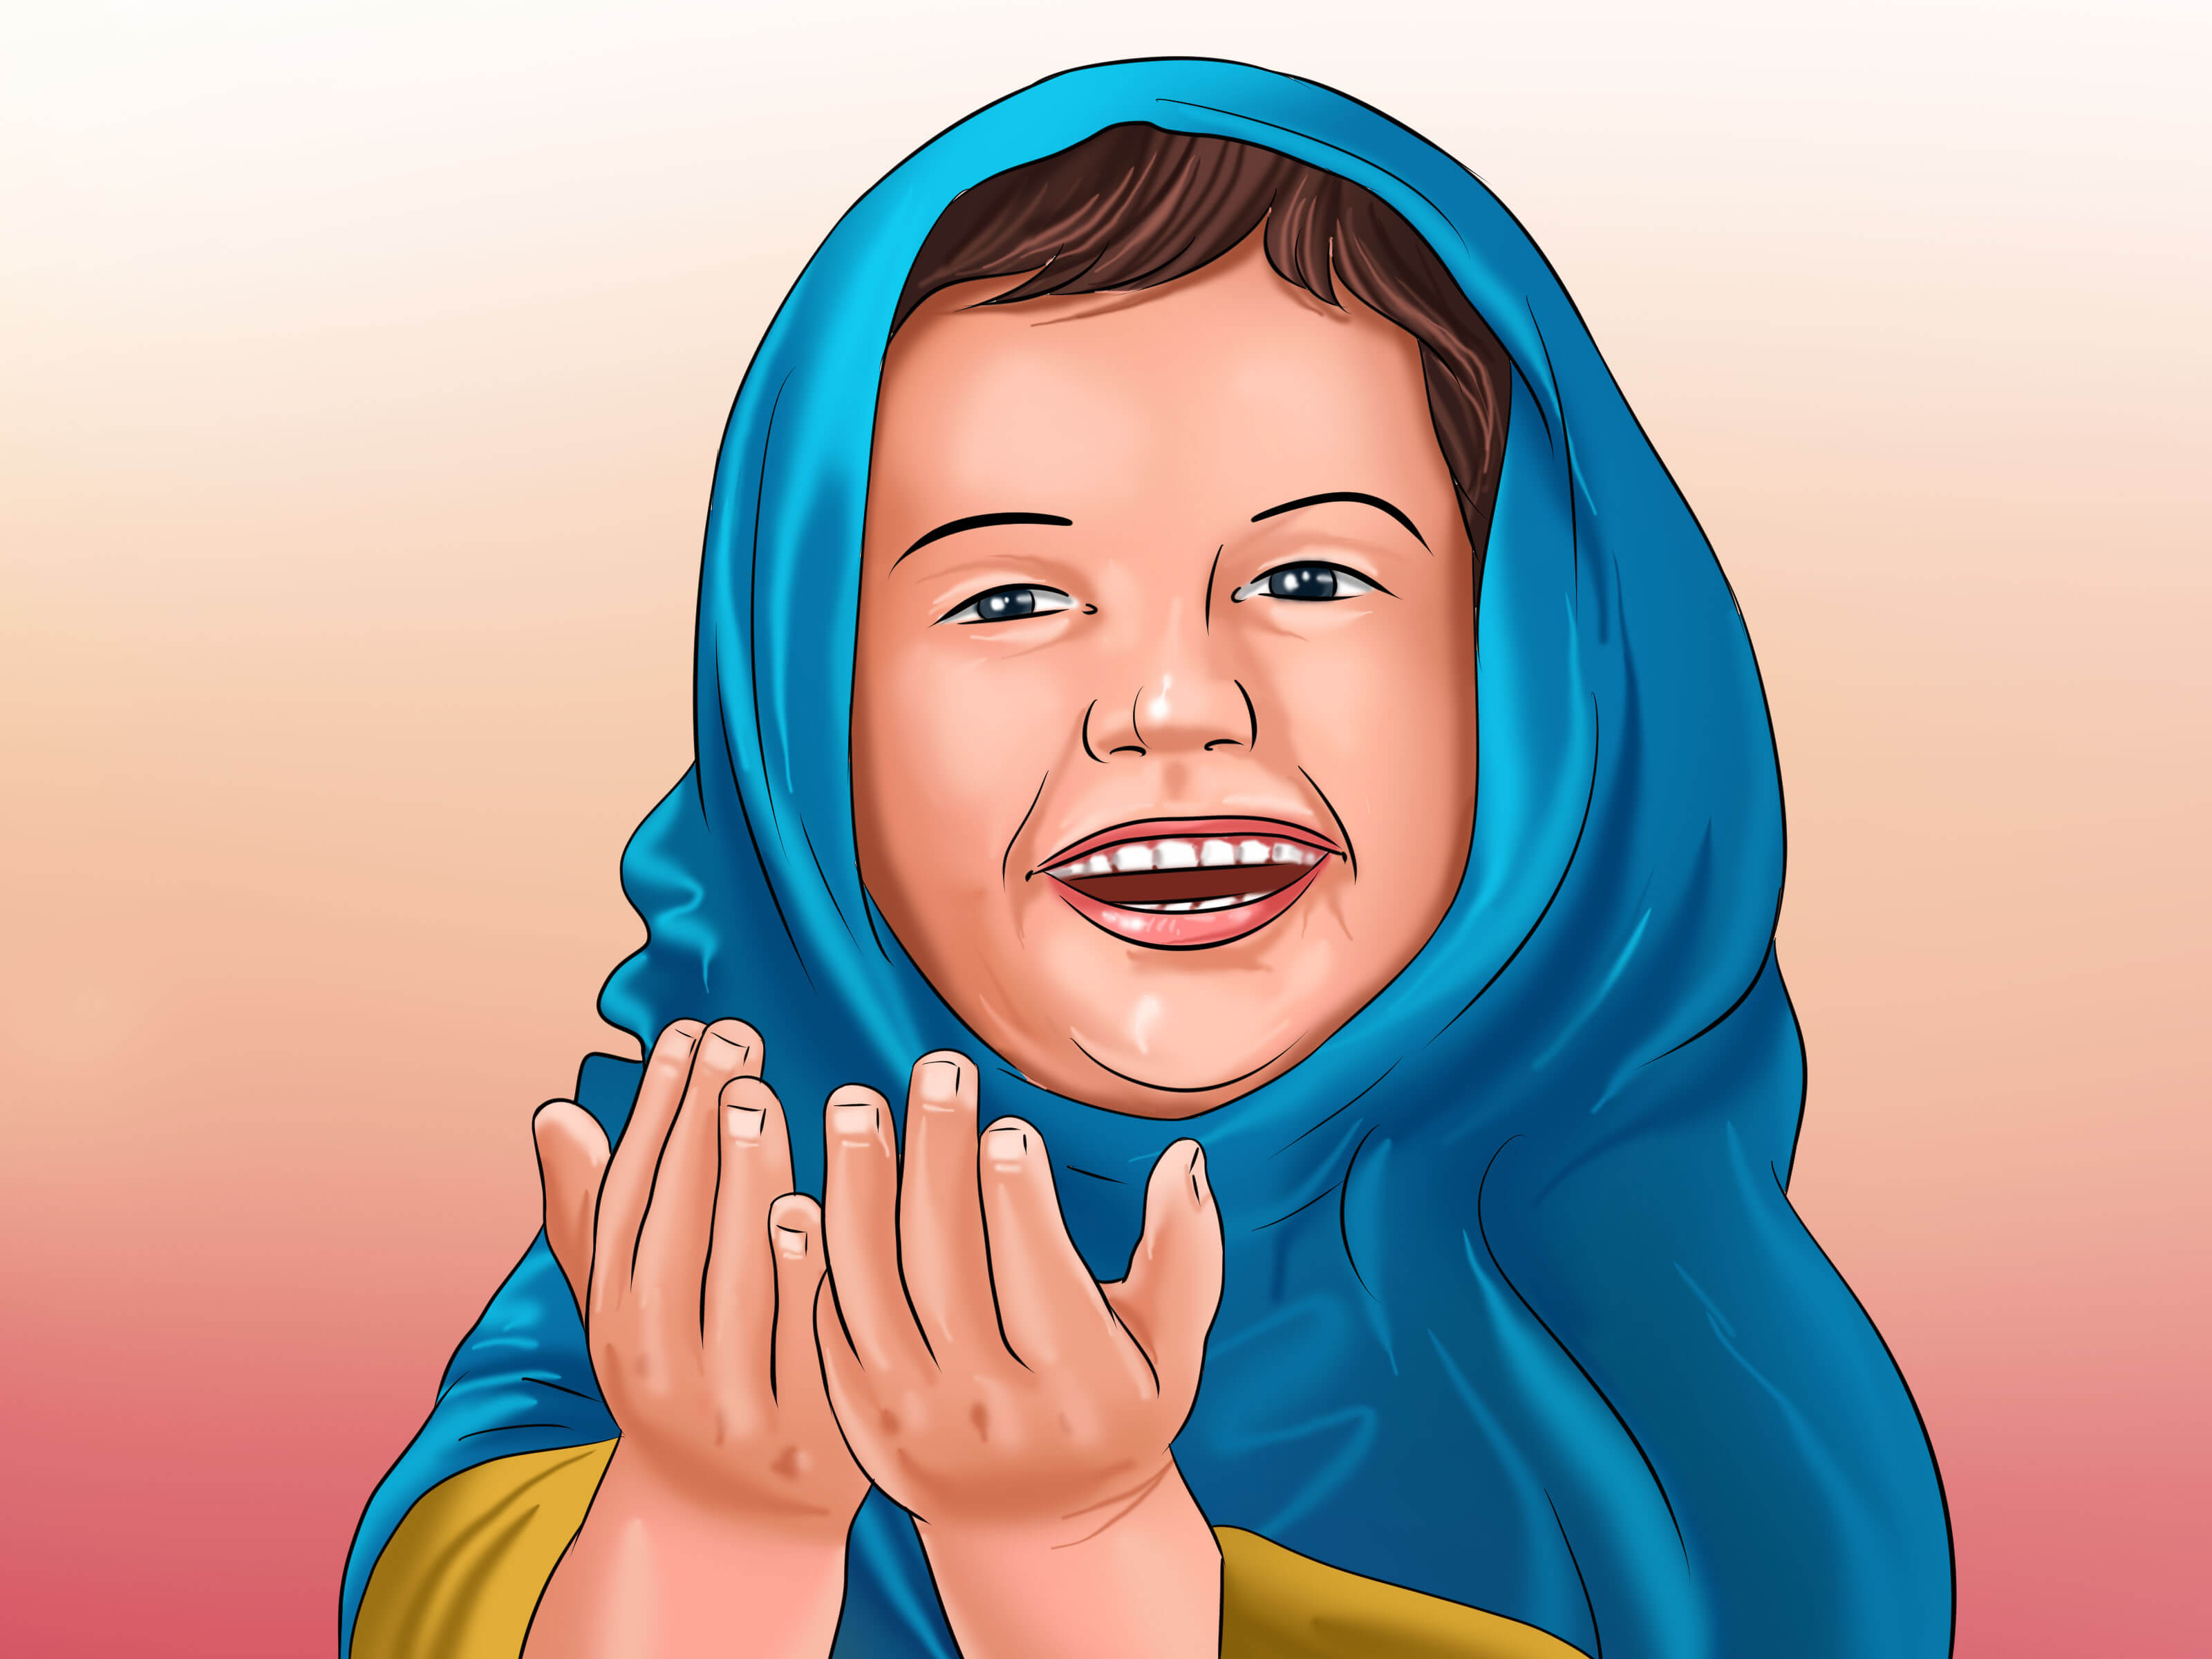 متى يجب أن يبدأ الأطفال الصيام؟ وما حكاية لعبة رمضان؟